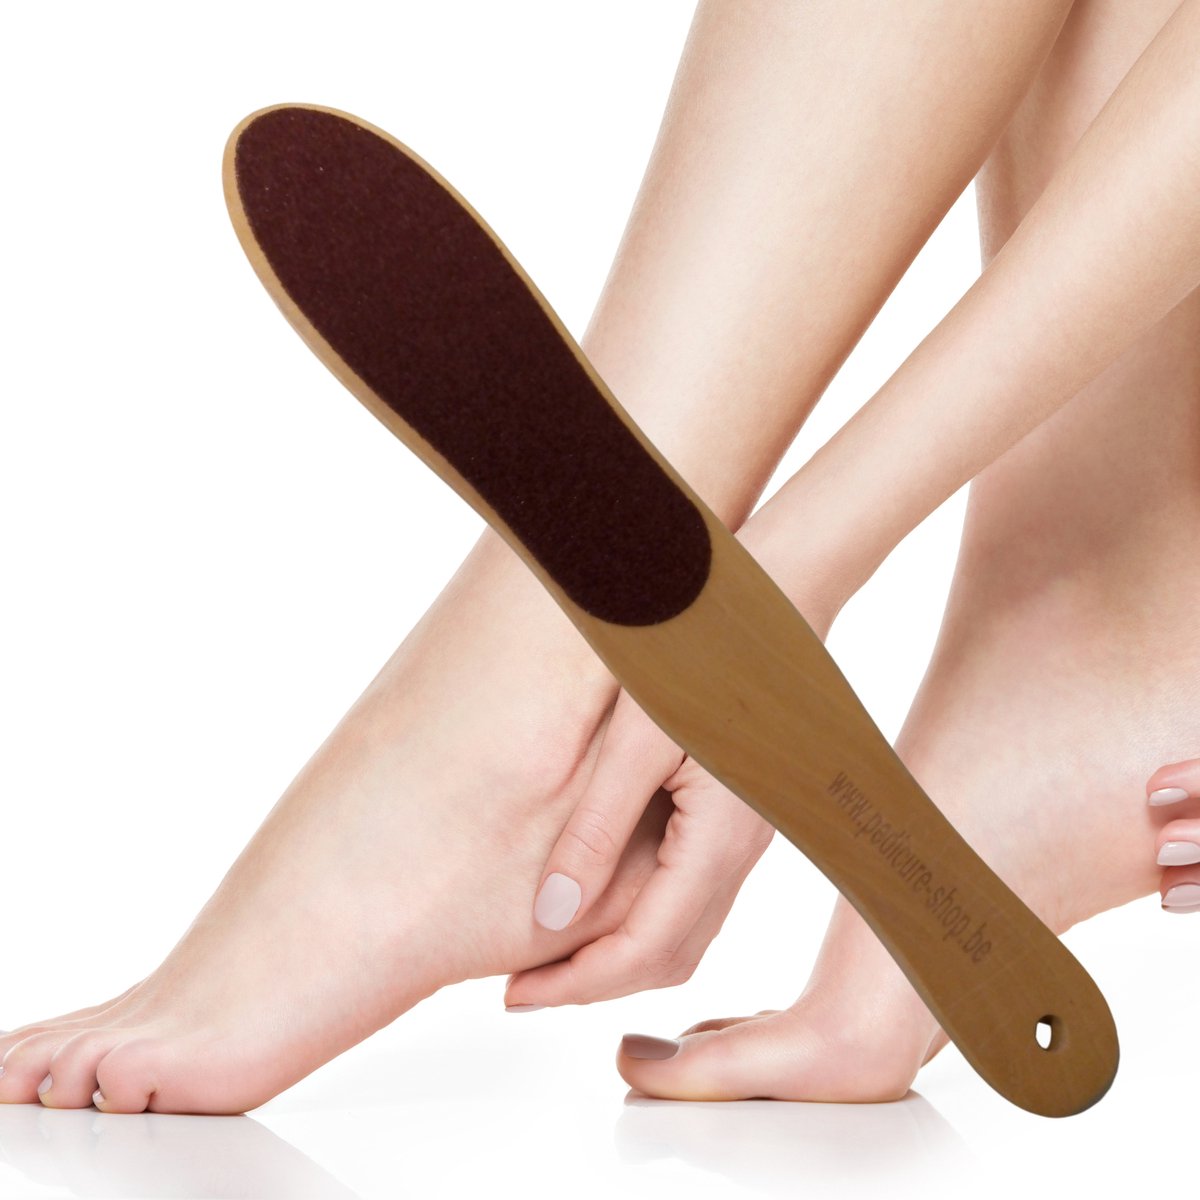 Professionele Eelt Vijl - Voet Vijl - Hout - dubbelzijdig - Verwijderen van eelt - Hielen - Harde huid - Rasp voeten